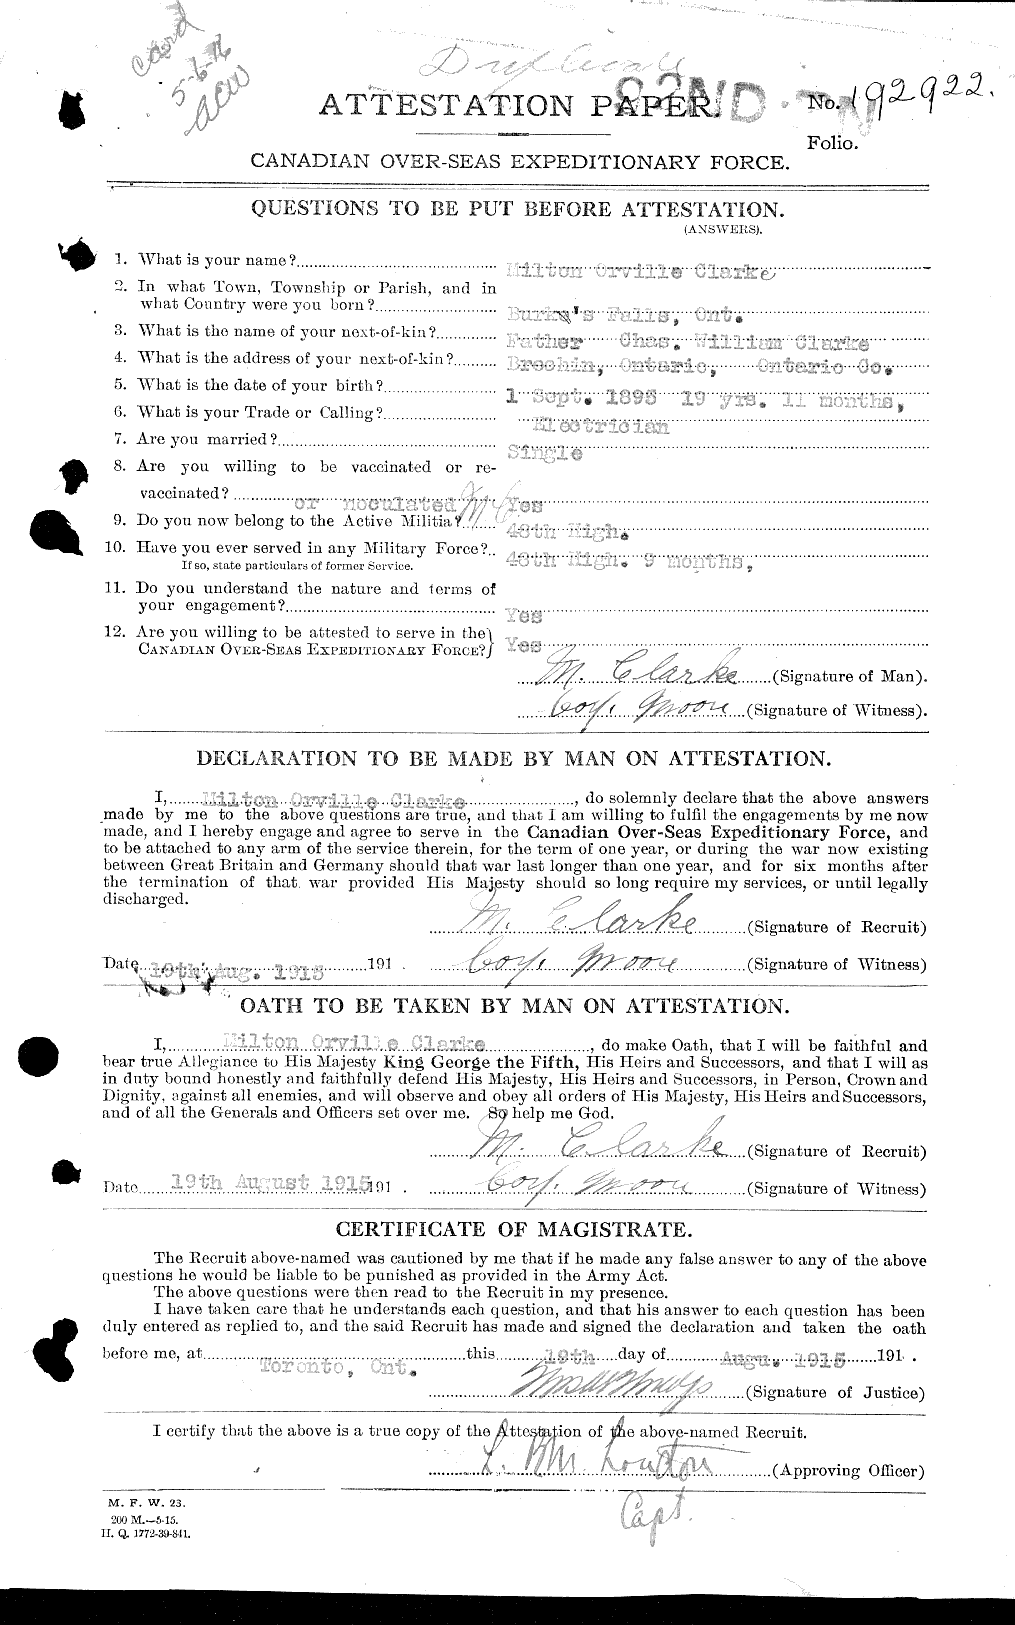 Dossiers du Personnel de la Première Guerre mondiale - CEC 023450a